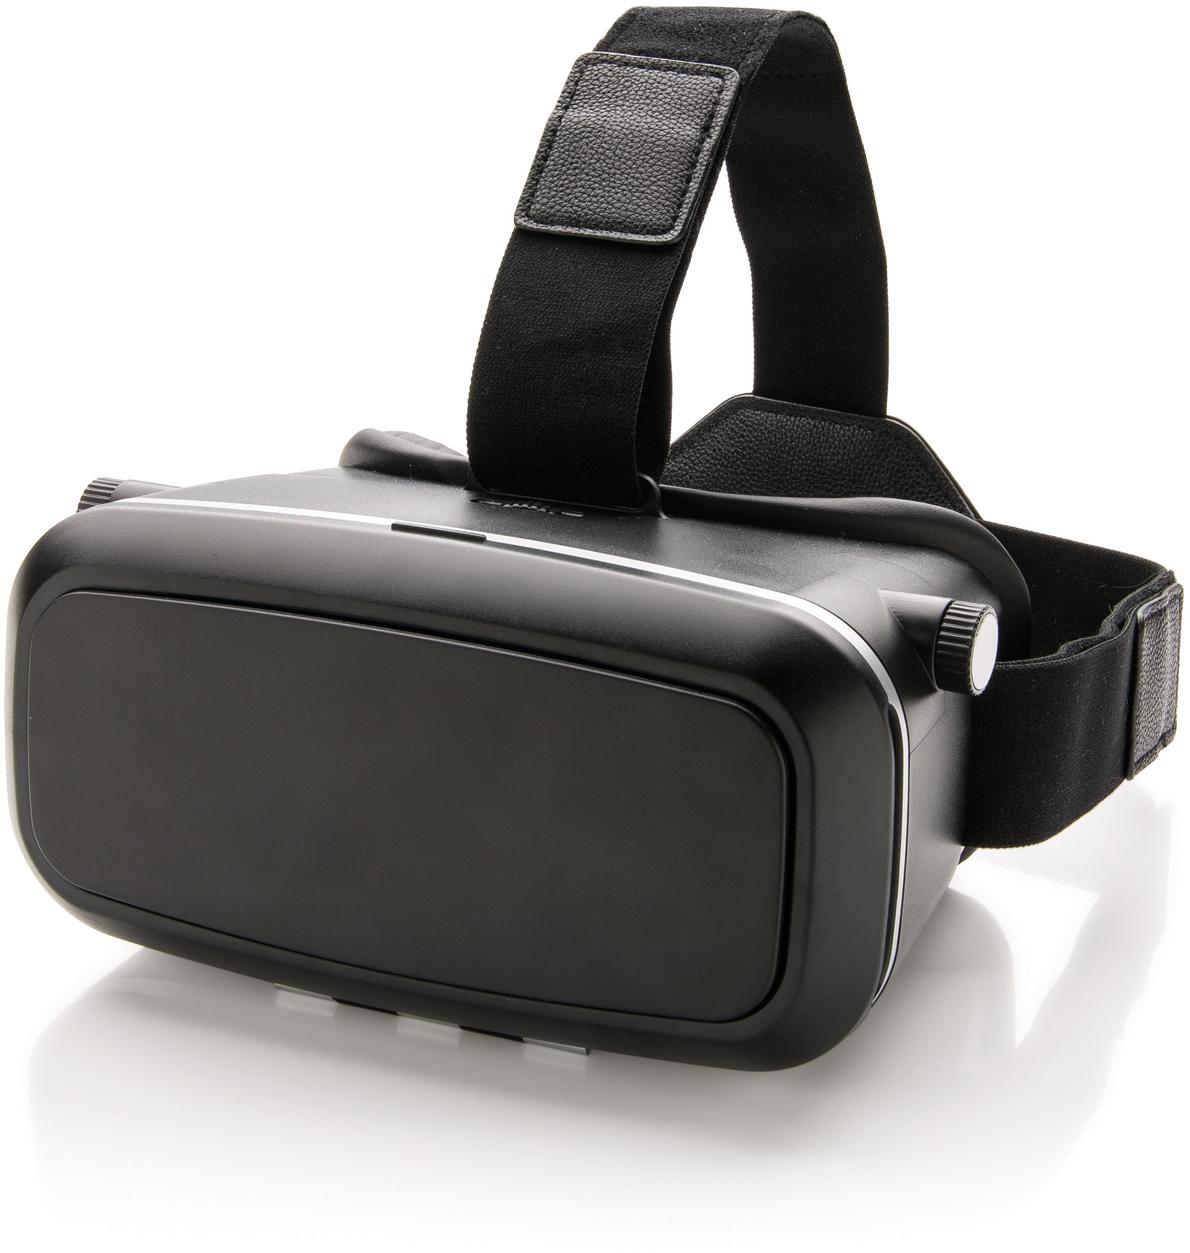 Sp vr. Magicree g1 очки виртуальной. 3d очки VR. Очки виртуальной реальности для телевизора. Виртуальные очки с ручками.